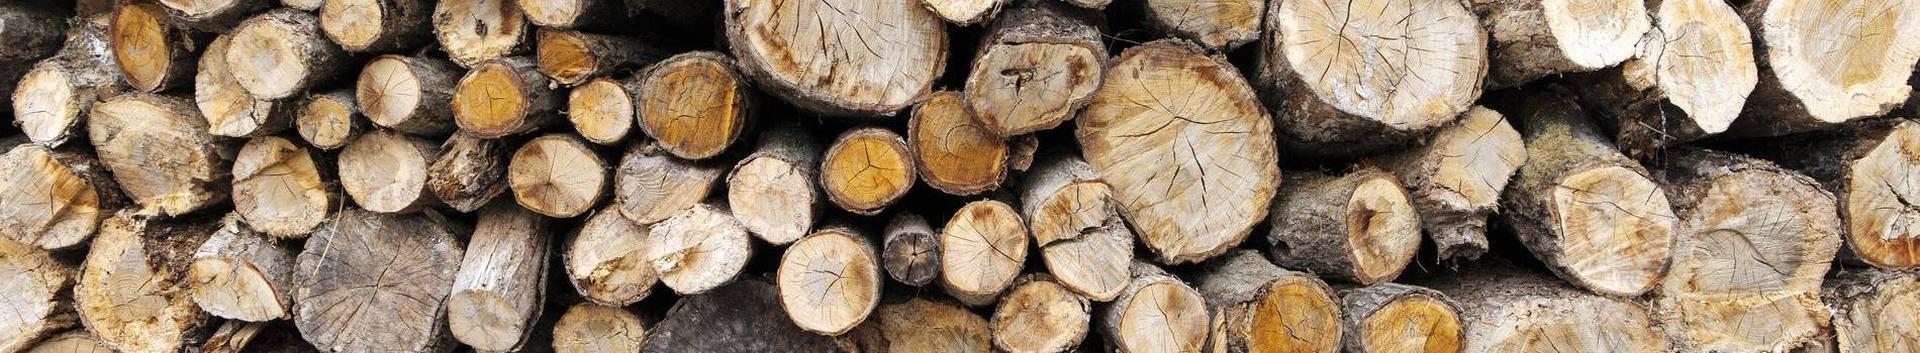 Usaldusväärne ja pikaajalise kogemusega Eesti omanikele kuuluv metsafirma. Metsa, metsamaa ja metsakinnistu ost parima hinnaga. PEFC sertifikaadiga. Vaata lähemalt!